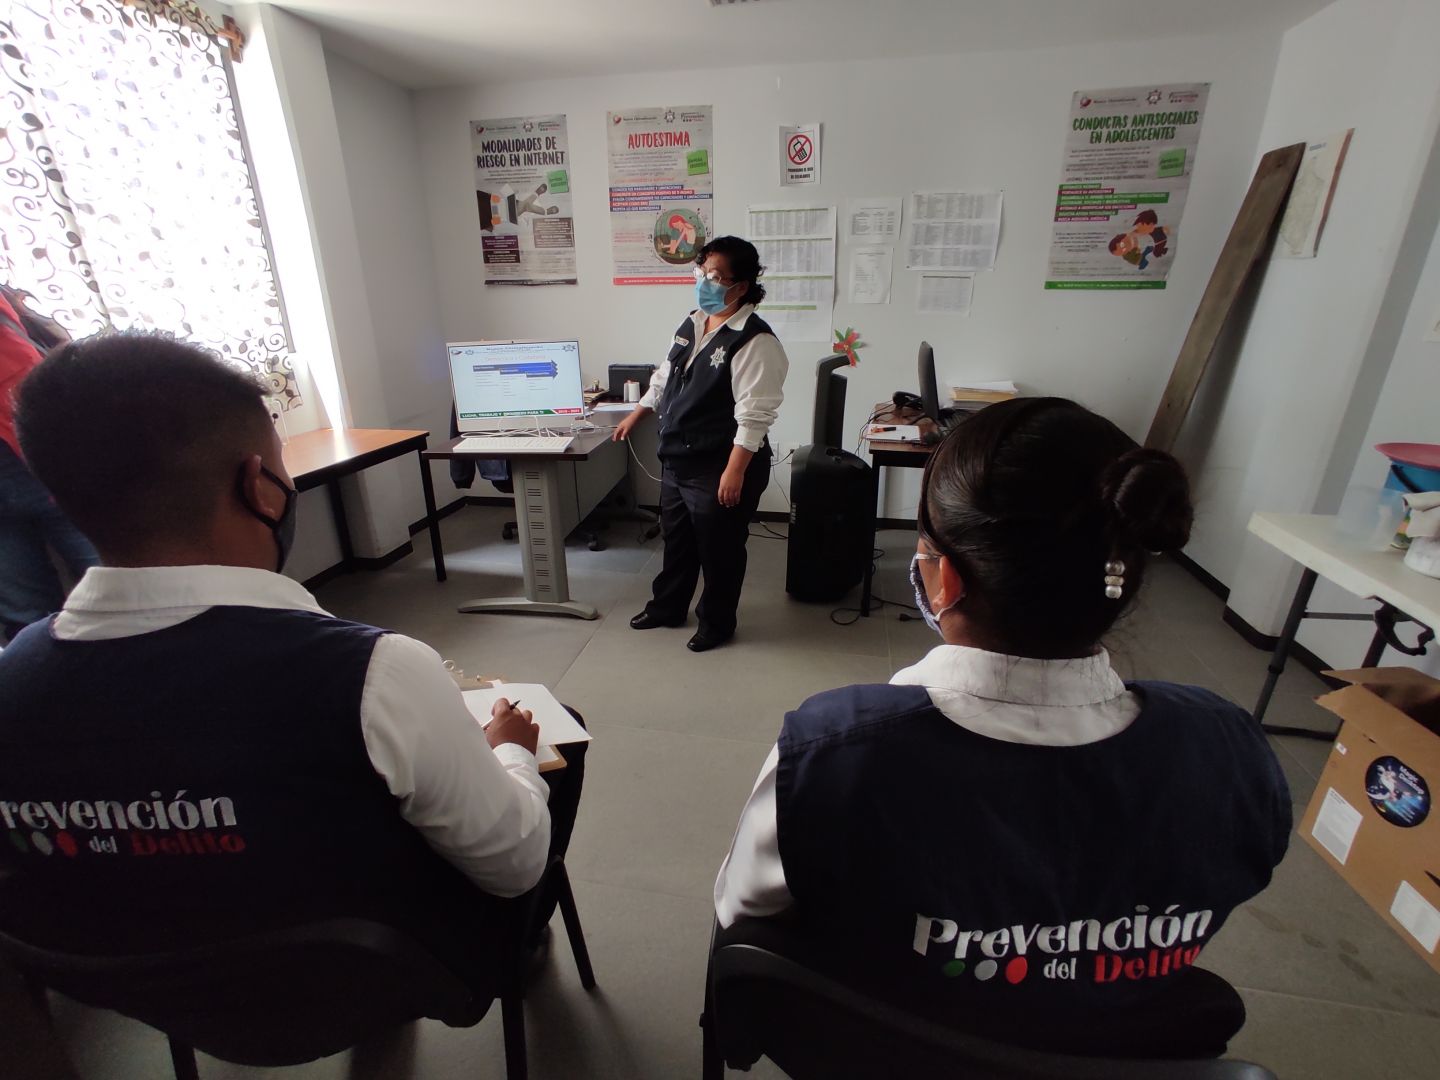 Policía de Chimalhuacán fortalece atención con perspectiva de género

 